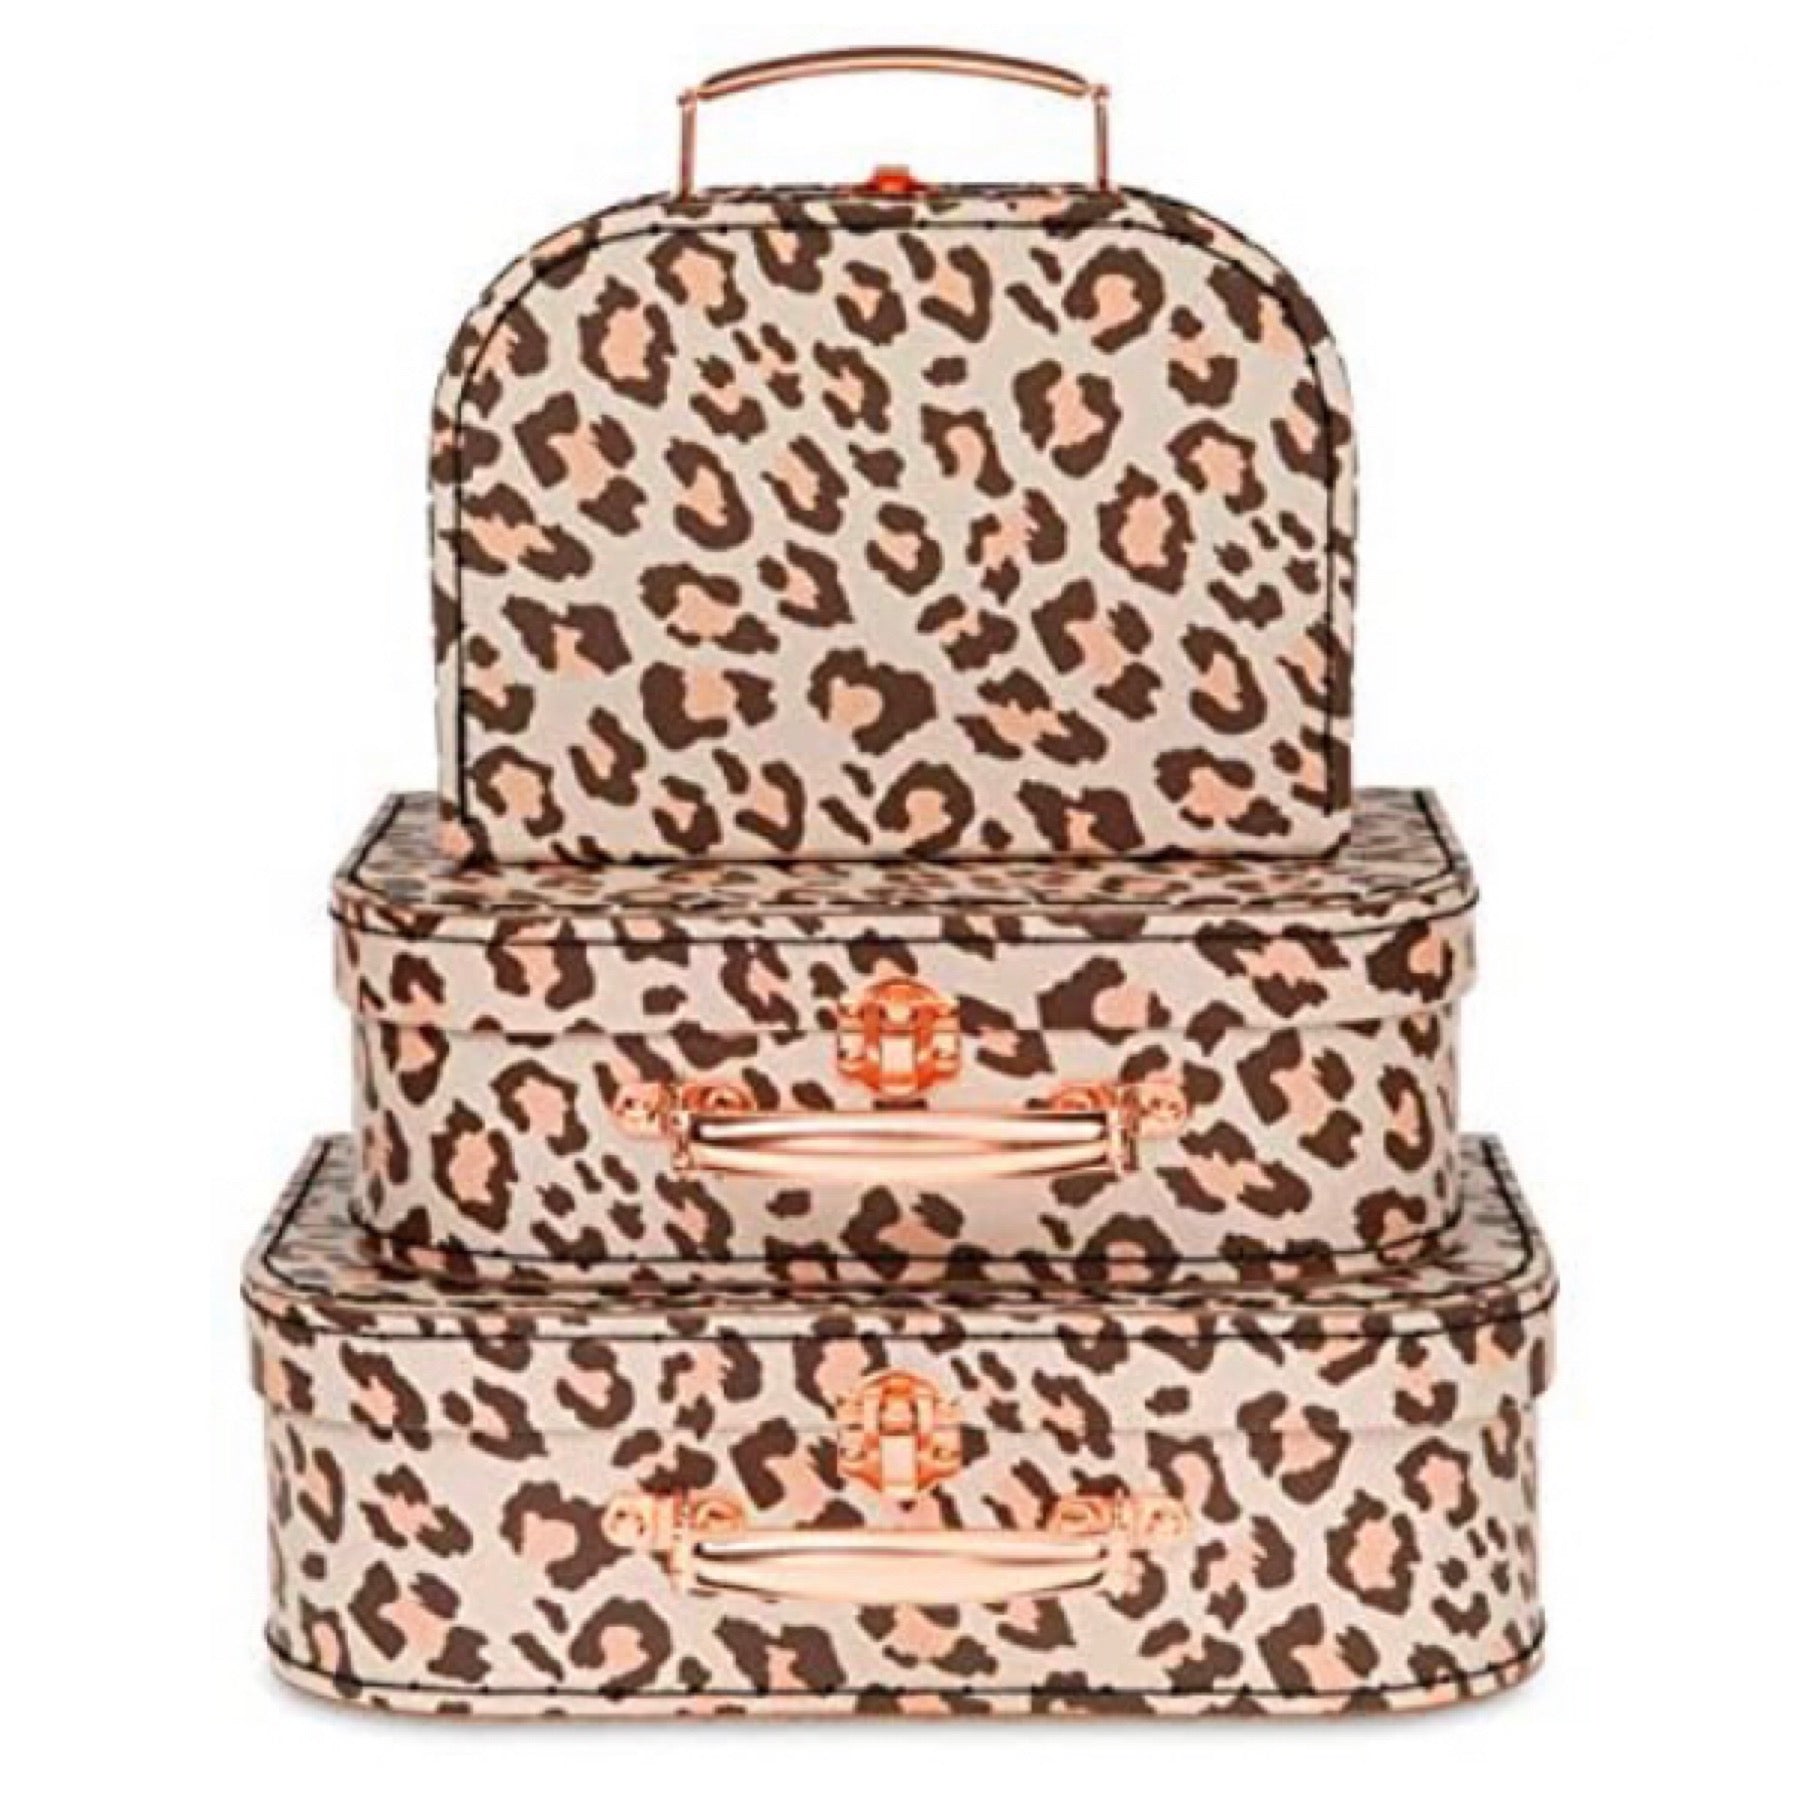 Cheetah Design Set of 3 Suitcases